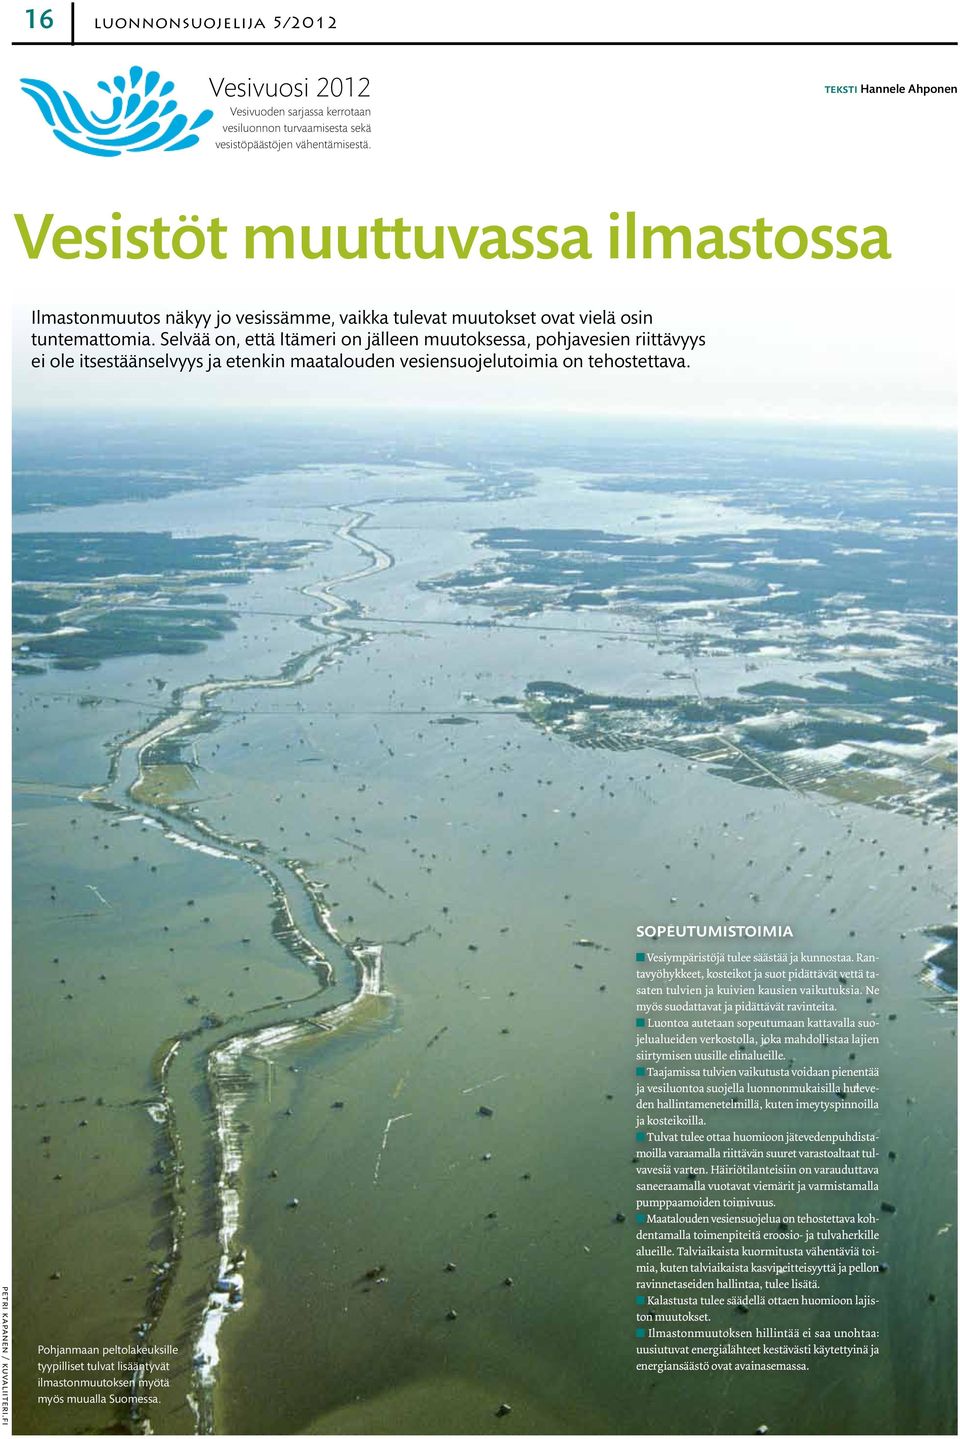 Selvää on, että Itämeri on jälleen muutoksessa, pohjavesien riittävyys ei ole itsestäänselvyys ja etenkin maatalouden vesiensuojelutoimia on tehostettava. sopeutumistoimia petri kapanen / kuvaliiteri.